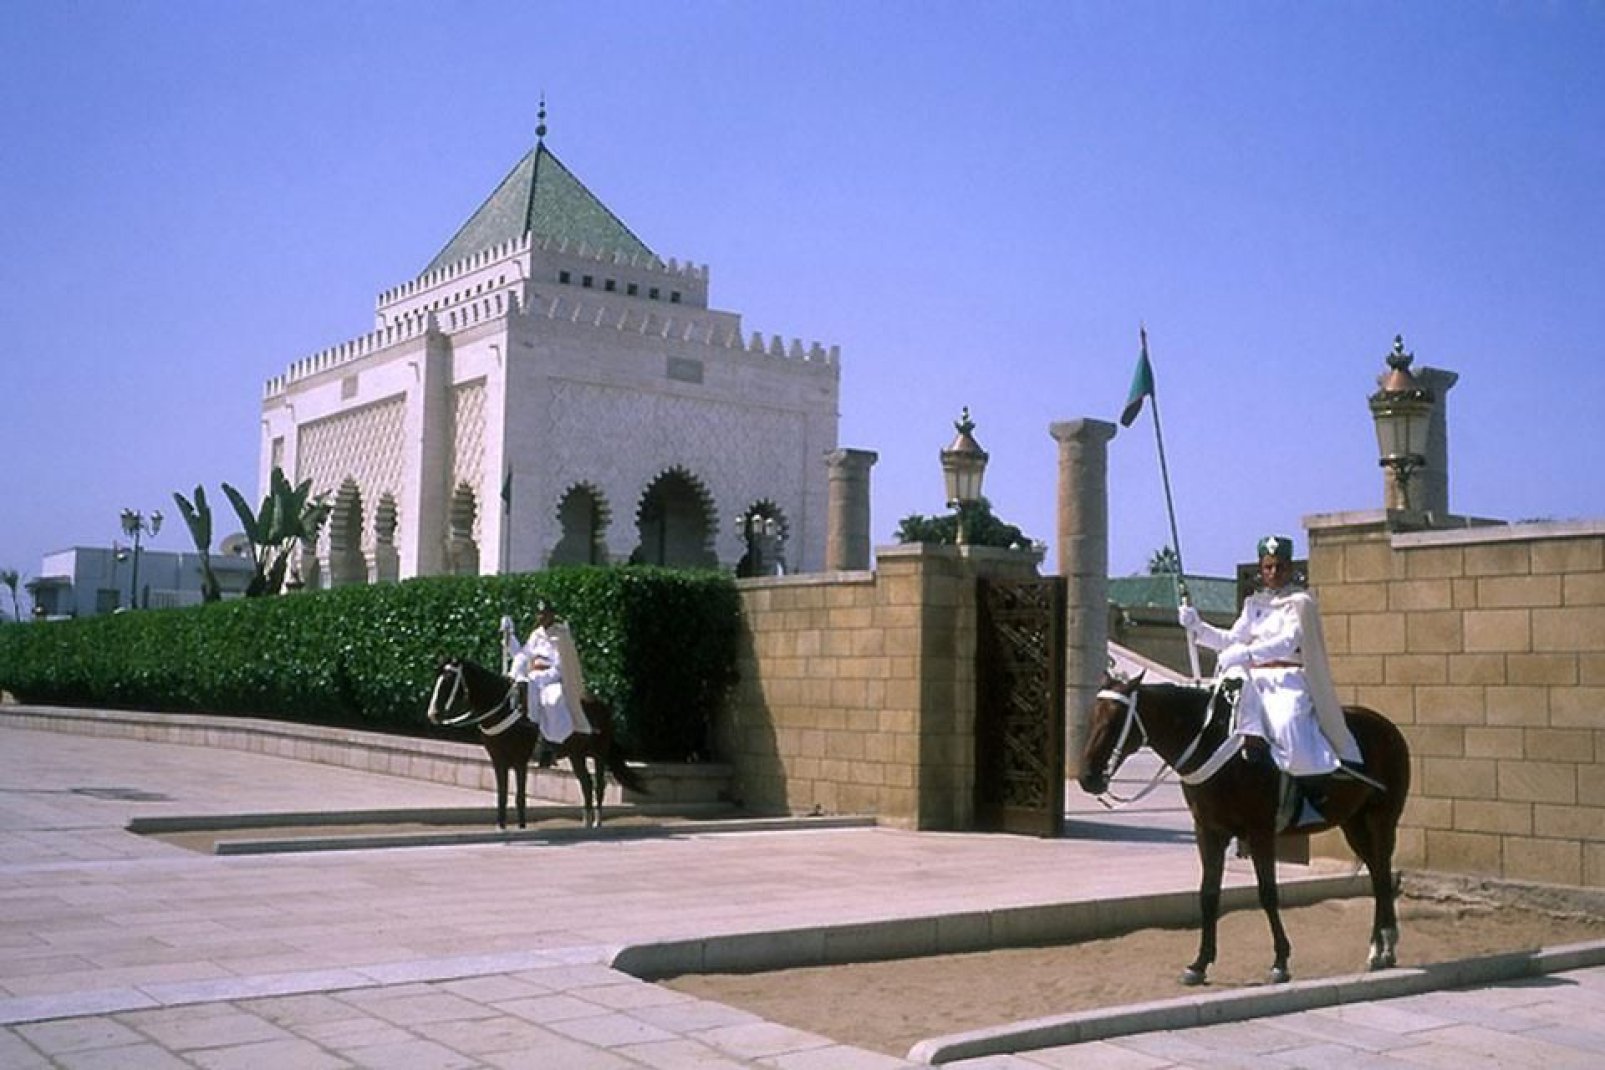 L'entrée de la tour Hassan est surveillée par deux gardes à cheval. La tour a une hauteur de 45m.